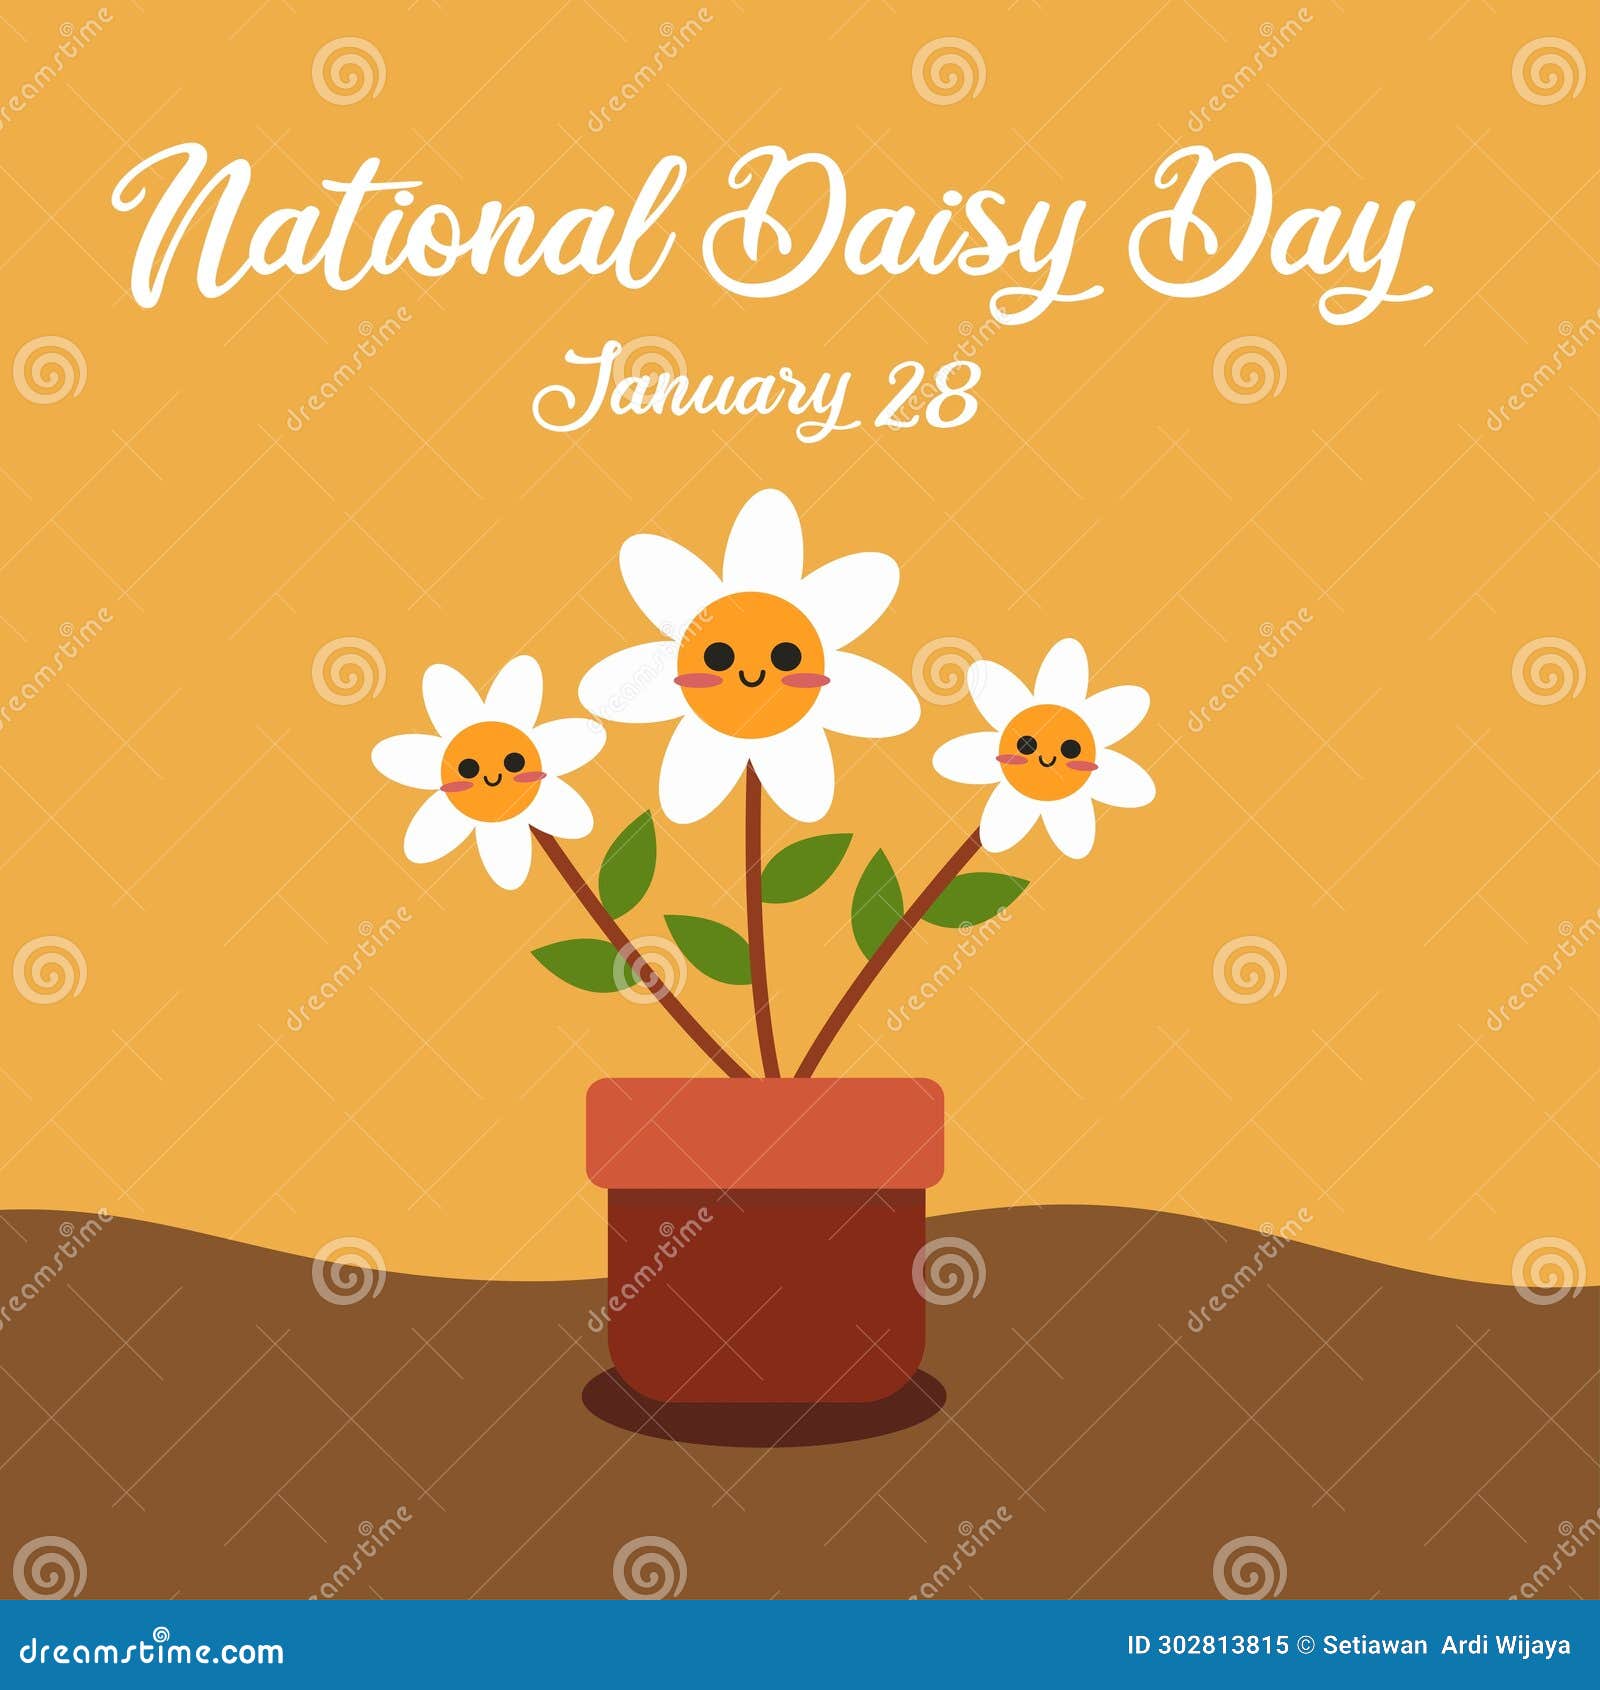 National Daisy Day (January 28th)